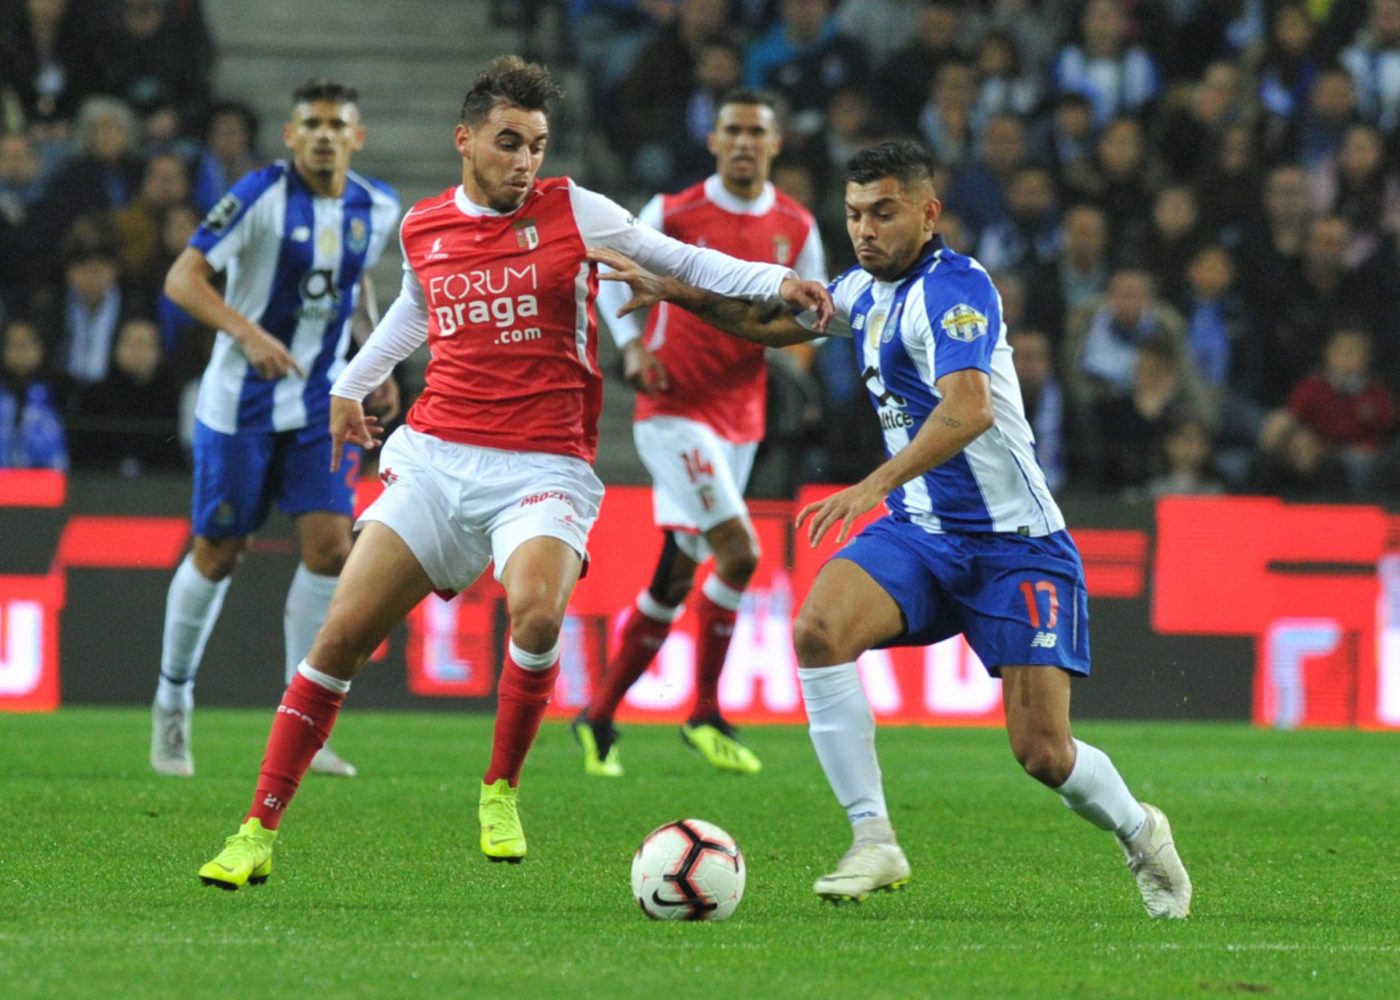 Nhận định Sporting Braga vs Torreense 22h30 ngày 13/01